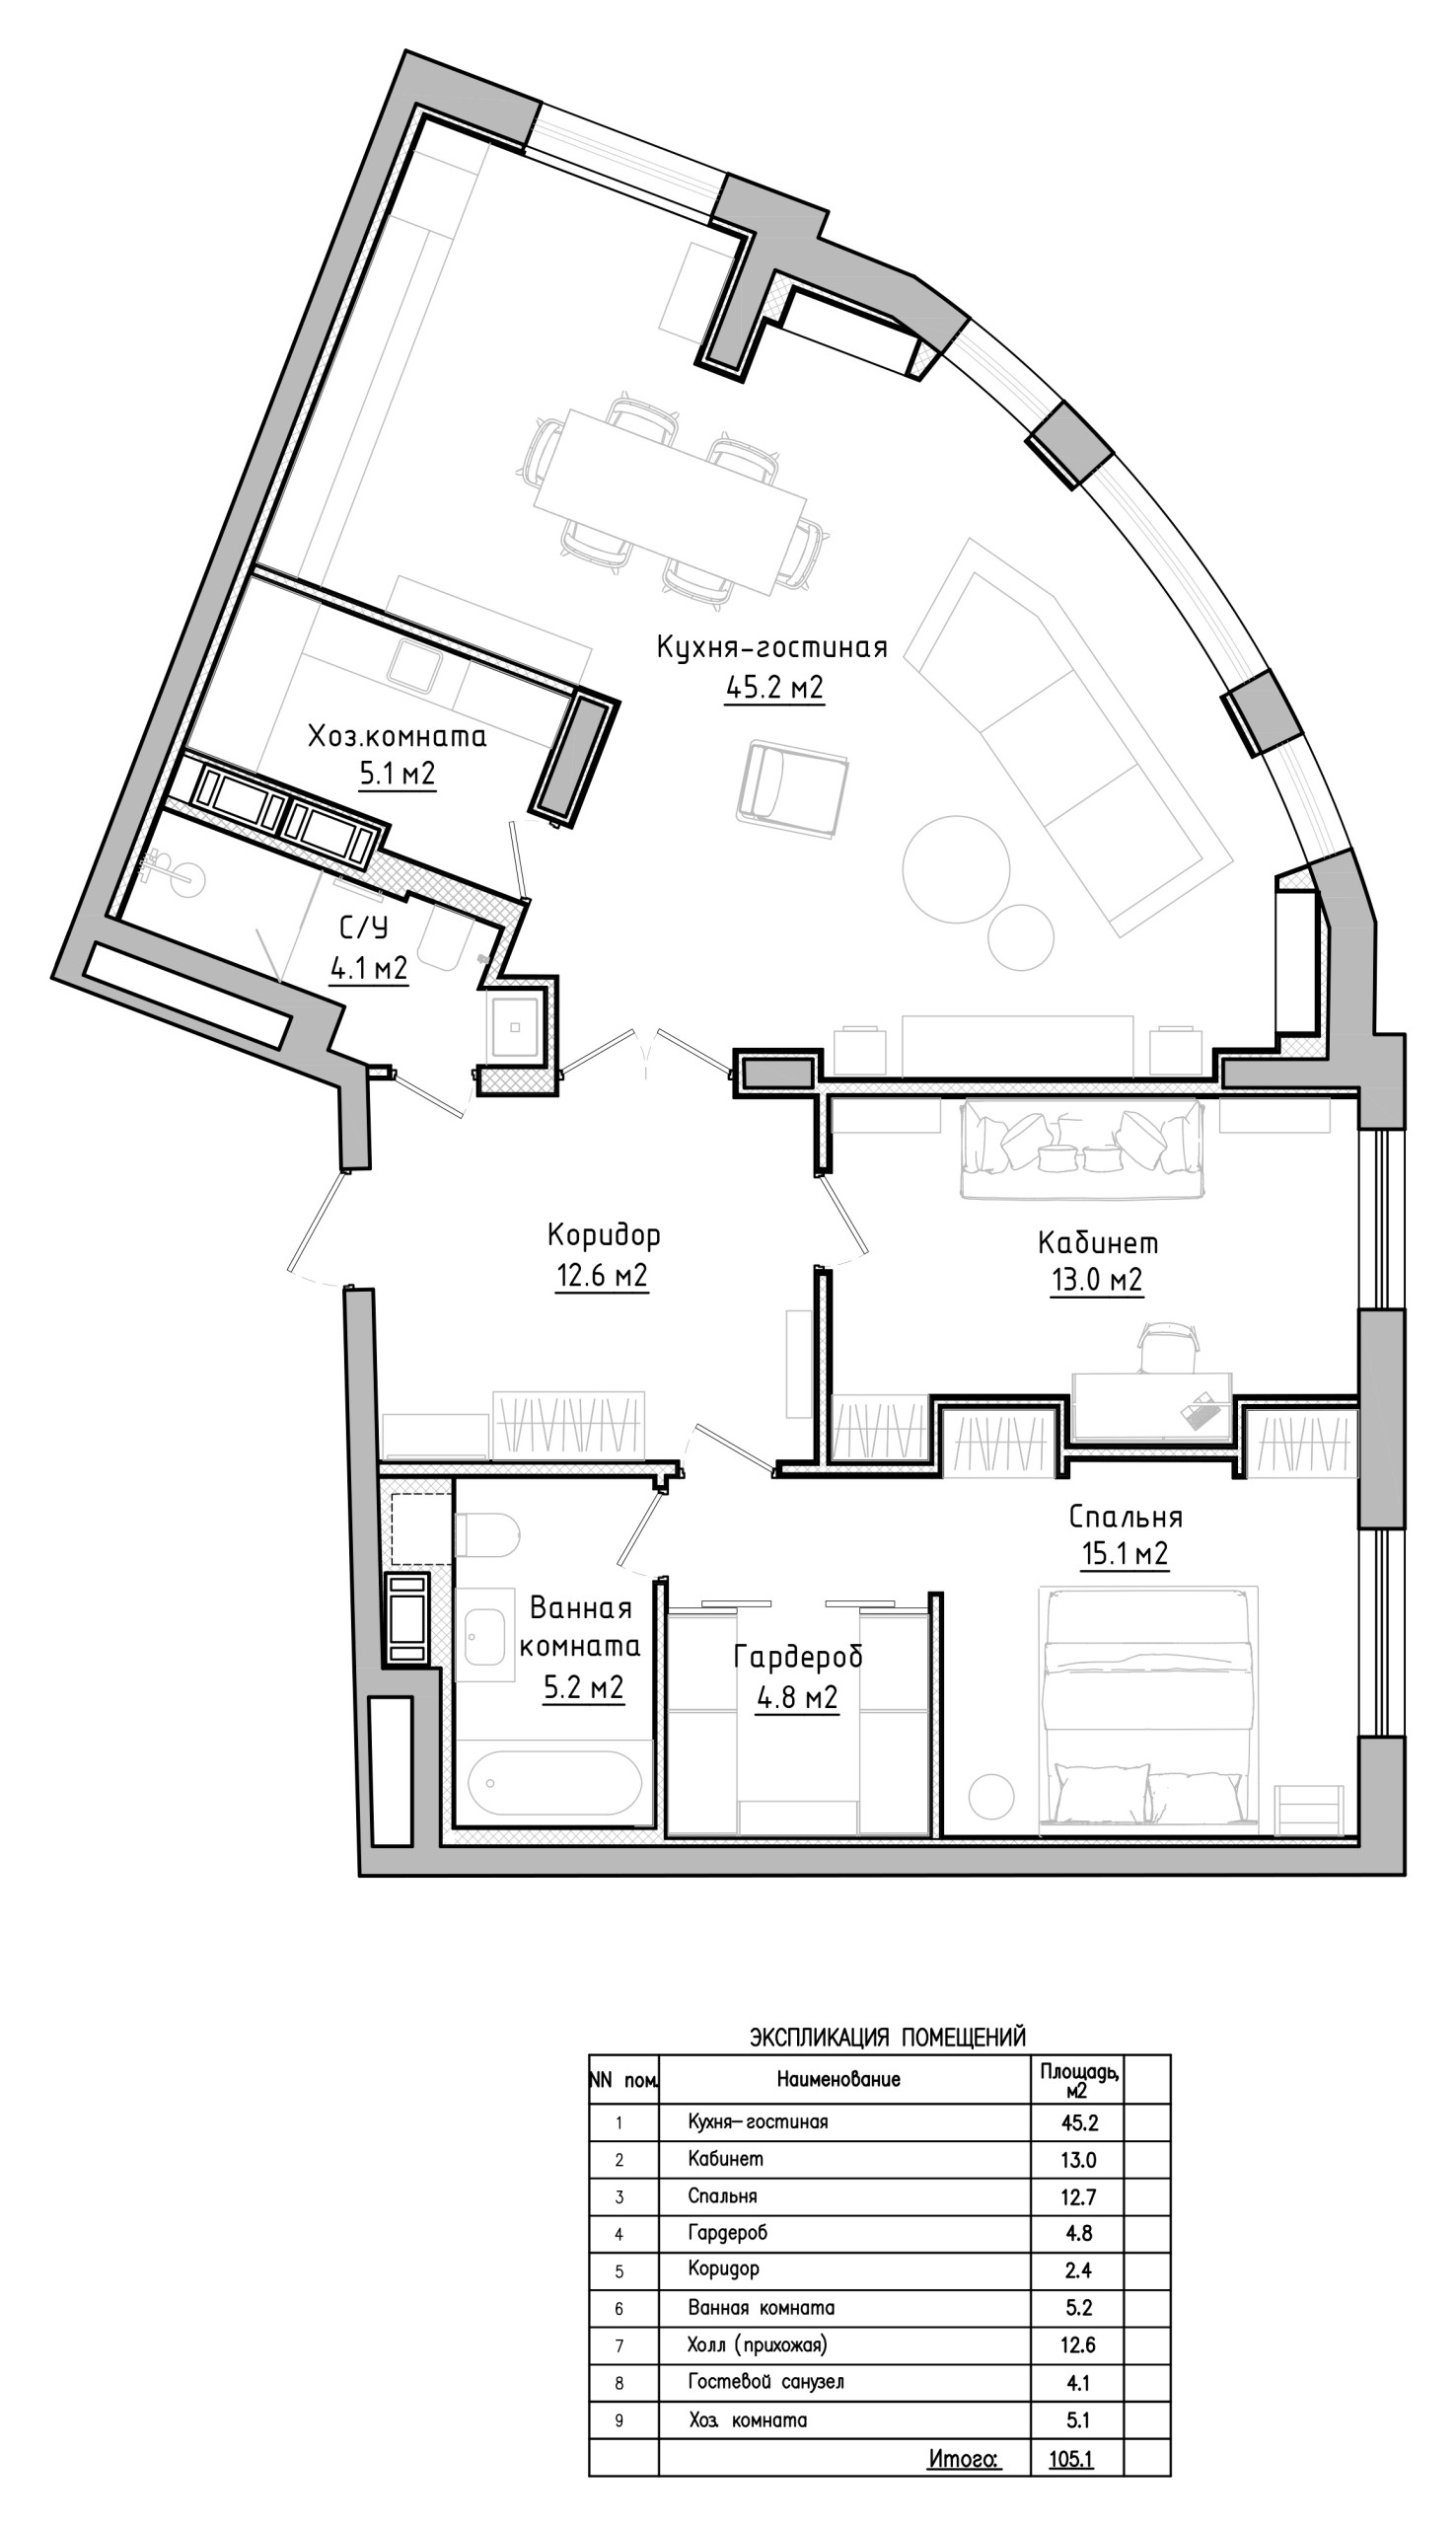 Квартира с радиусной планировкой идеи для дома,интерьер и дизайн